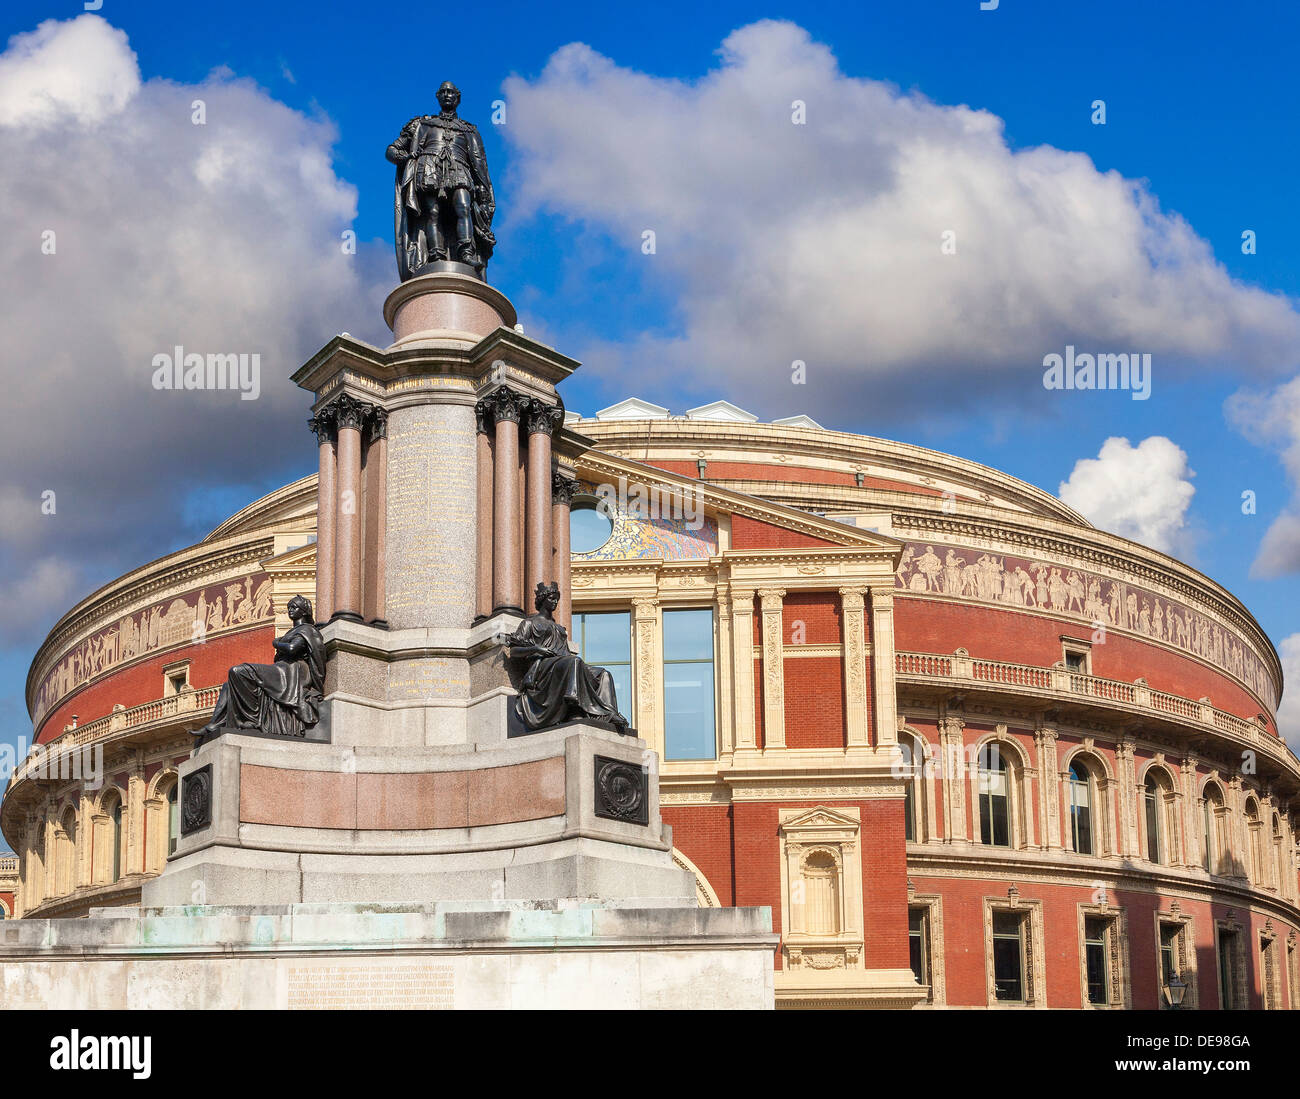 Le Royal Albert Hall, London, UK, vue arrière du Prince Consort Road, de statue de Prince Albert en premier plan Banque D'Images